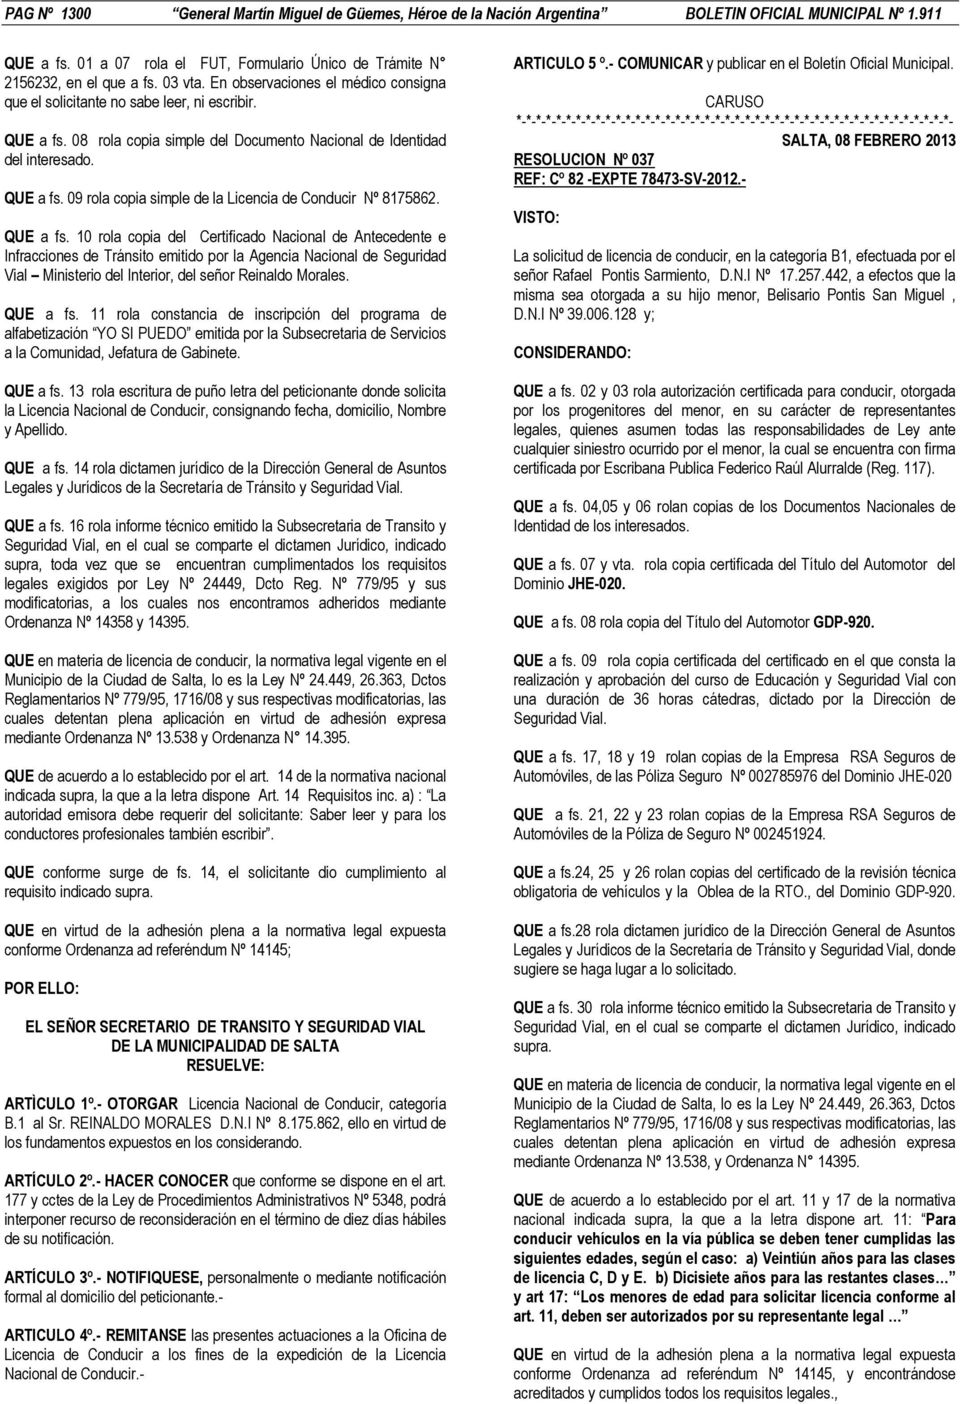 QUE a fs. 10 rola copia del Certificado Nacional de Antecedente e Infracciones de Tránsito emitido por la Agencia Nacional de Seguridad Vial Ministerio del Interior, del señor Reinaldo Morales.